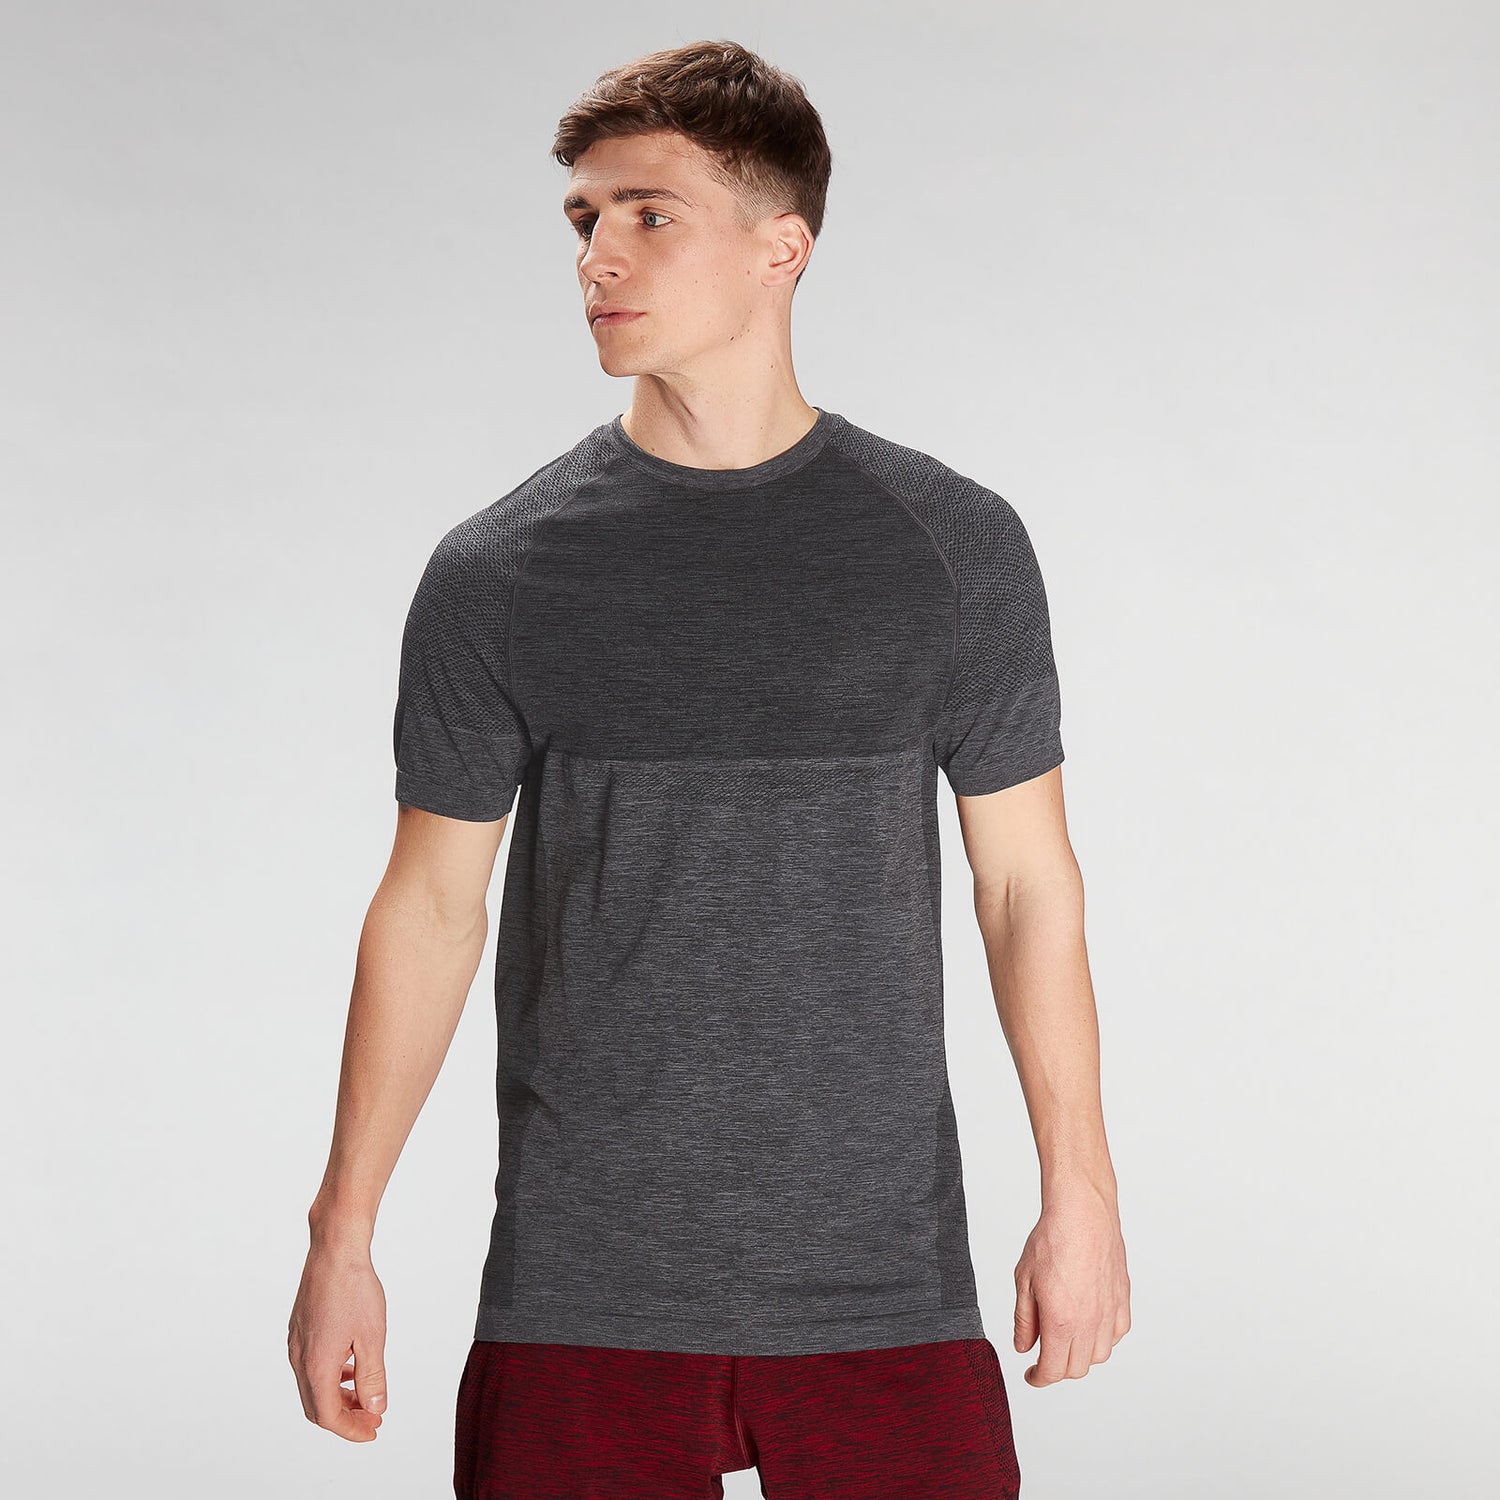 Pánske bezšvové tričko s krátkymi rukávmi MP Essentials – sivé melírované - XS